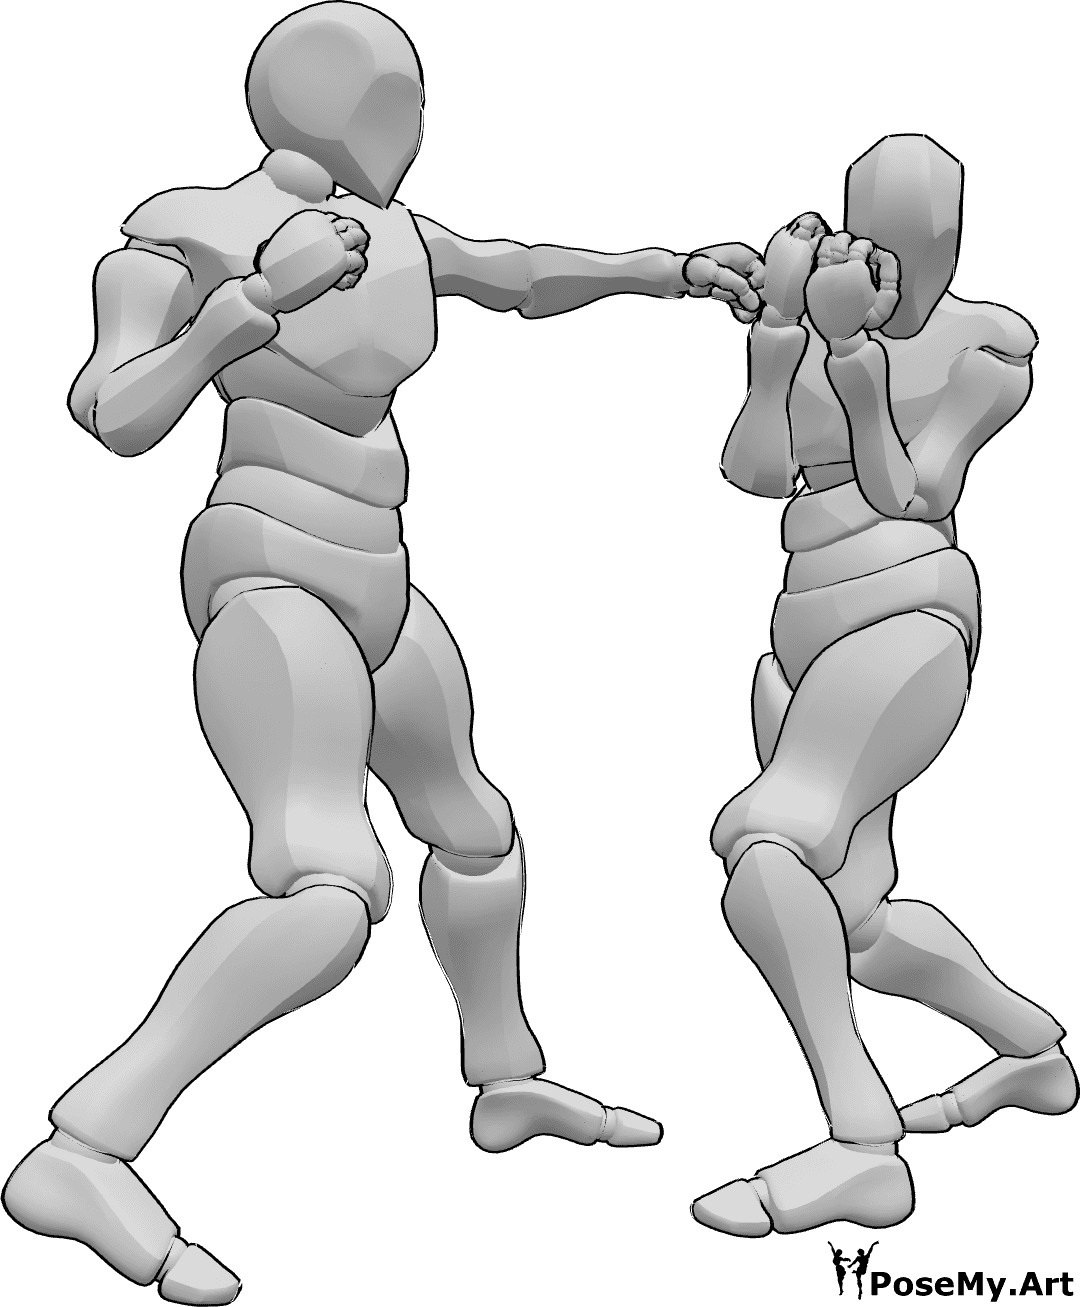 Posen-Referenz- Pose des ausweichenden linken Hakens - Zwei Männer boxen, einer von ihnen schlägt einen linken Haken, der andere weicht aus.